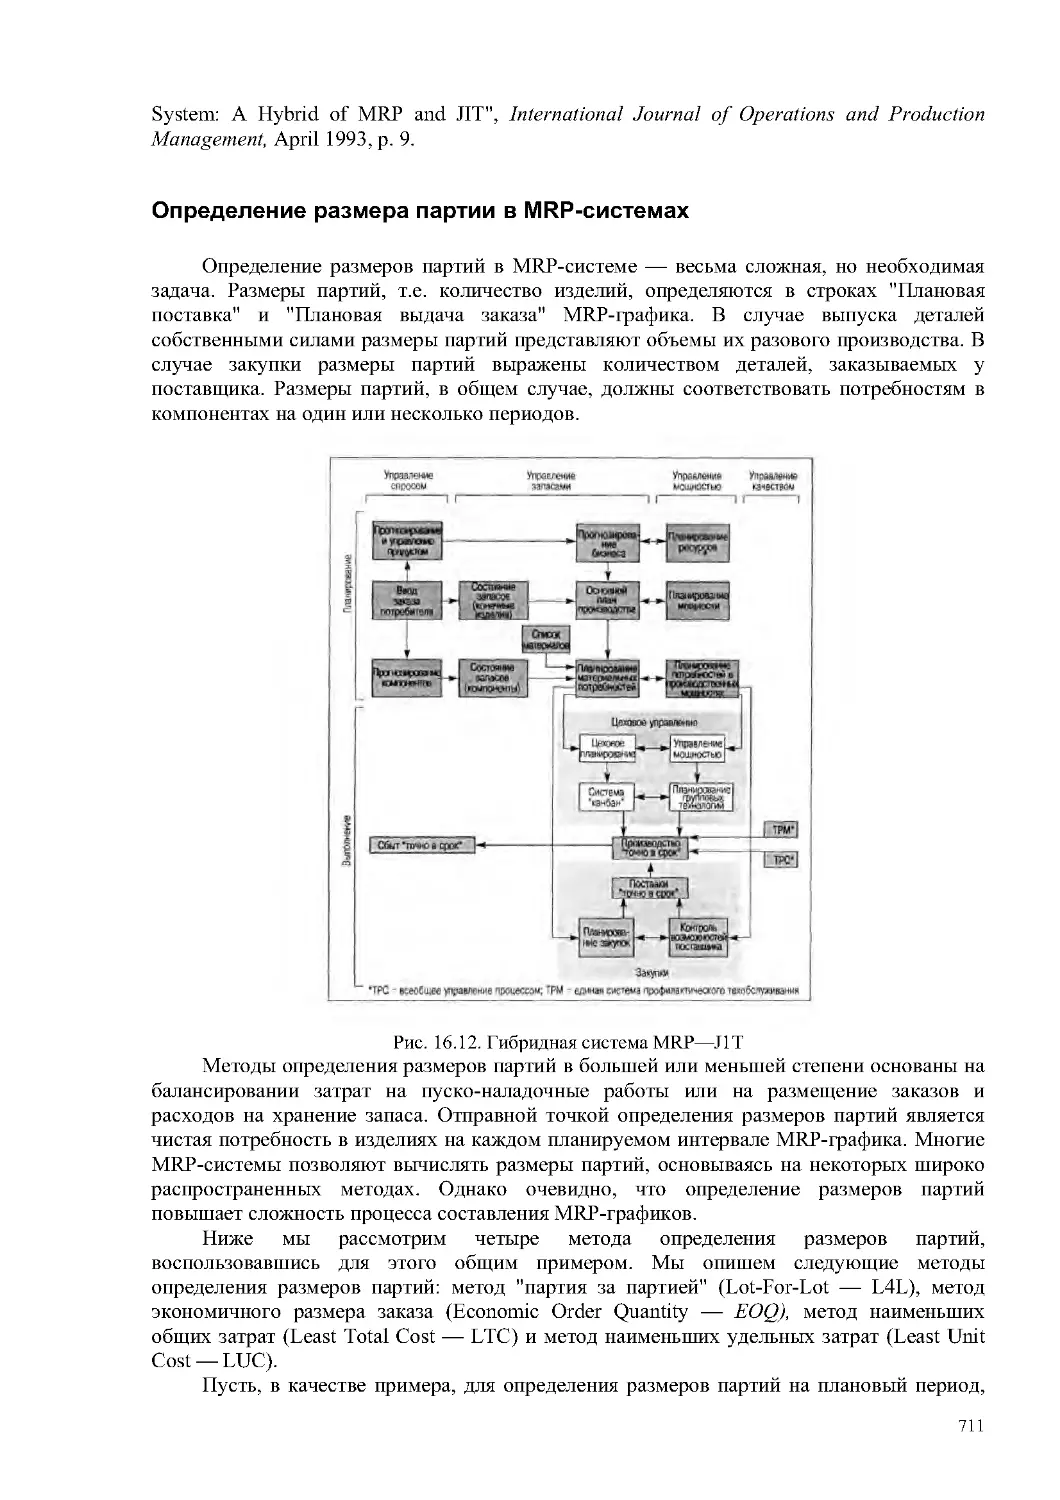 Определение размера партии в MRP-системах